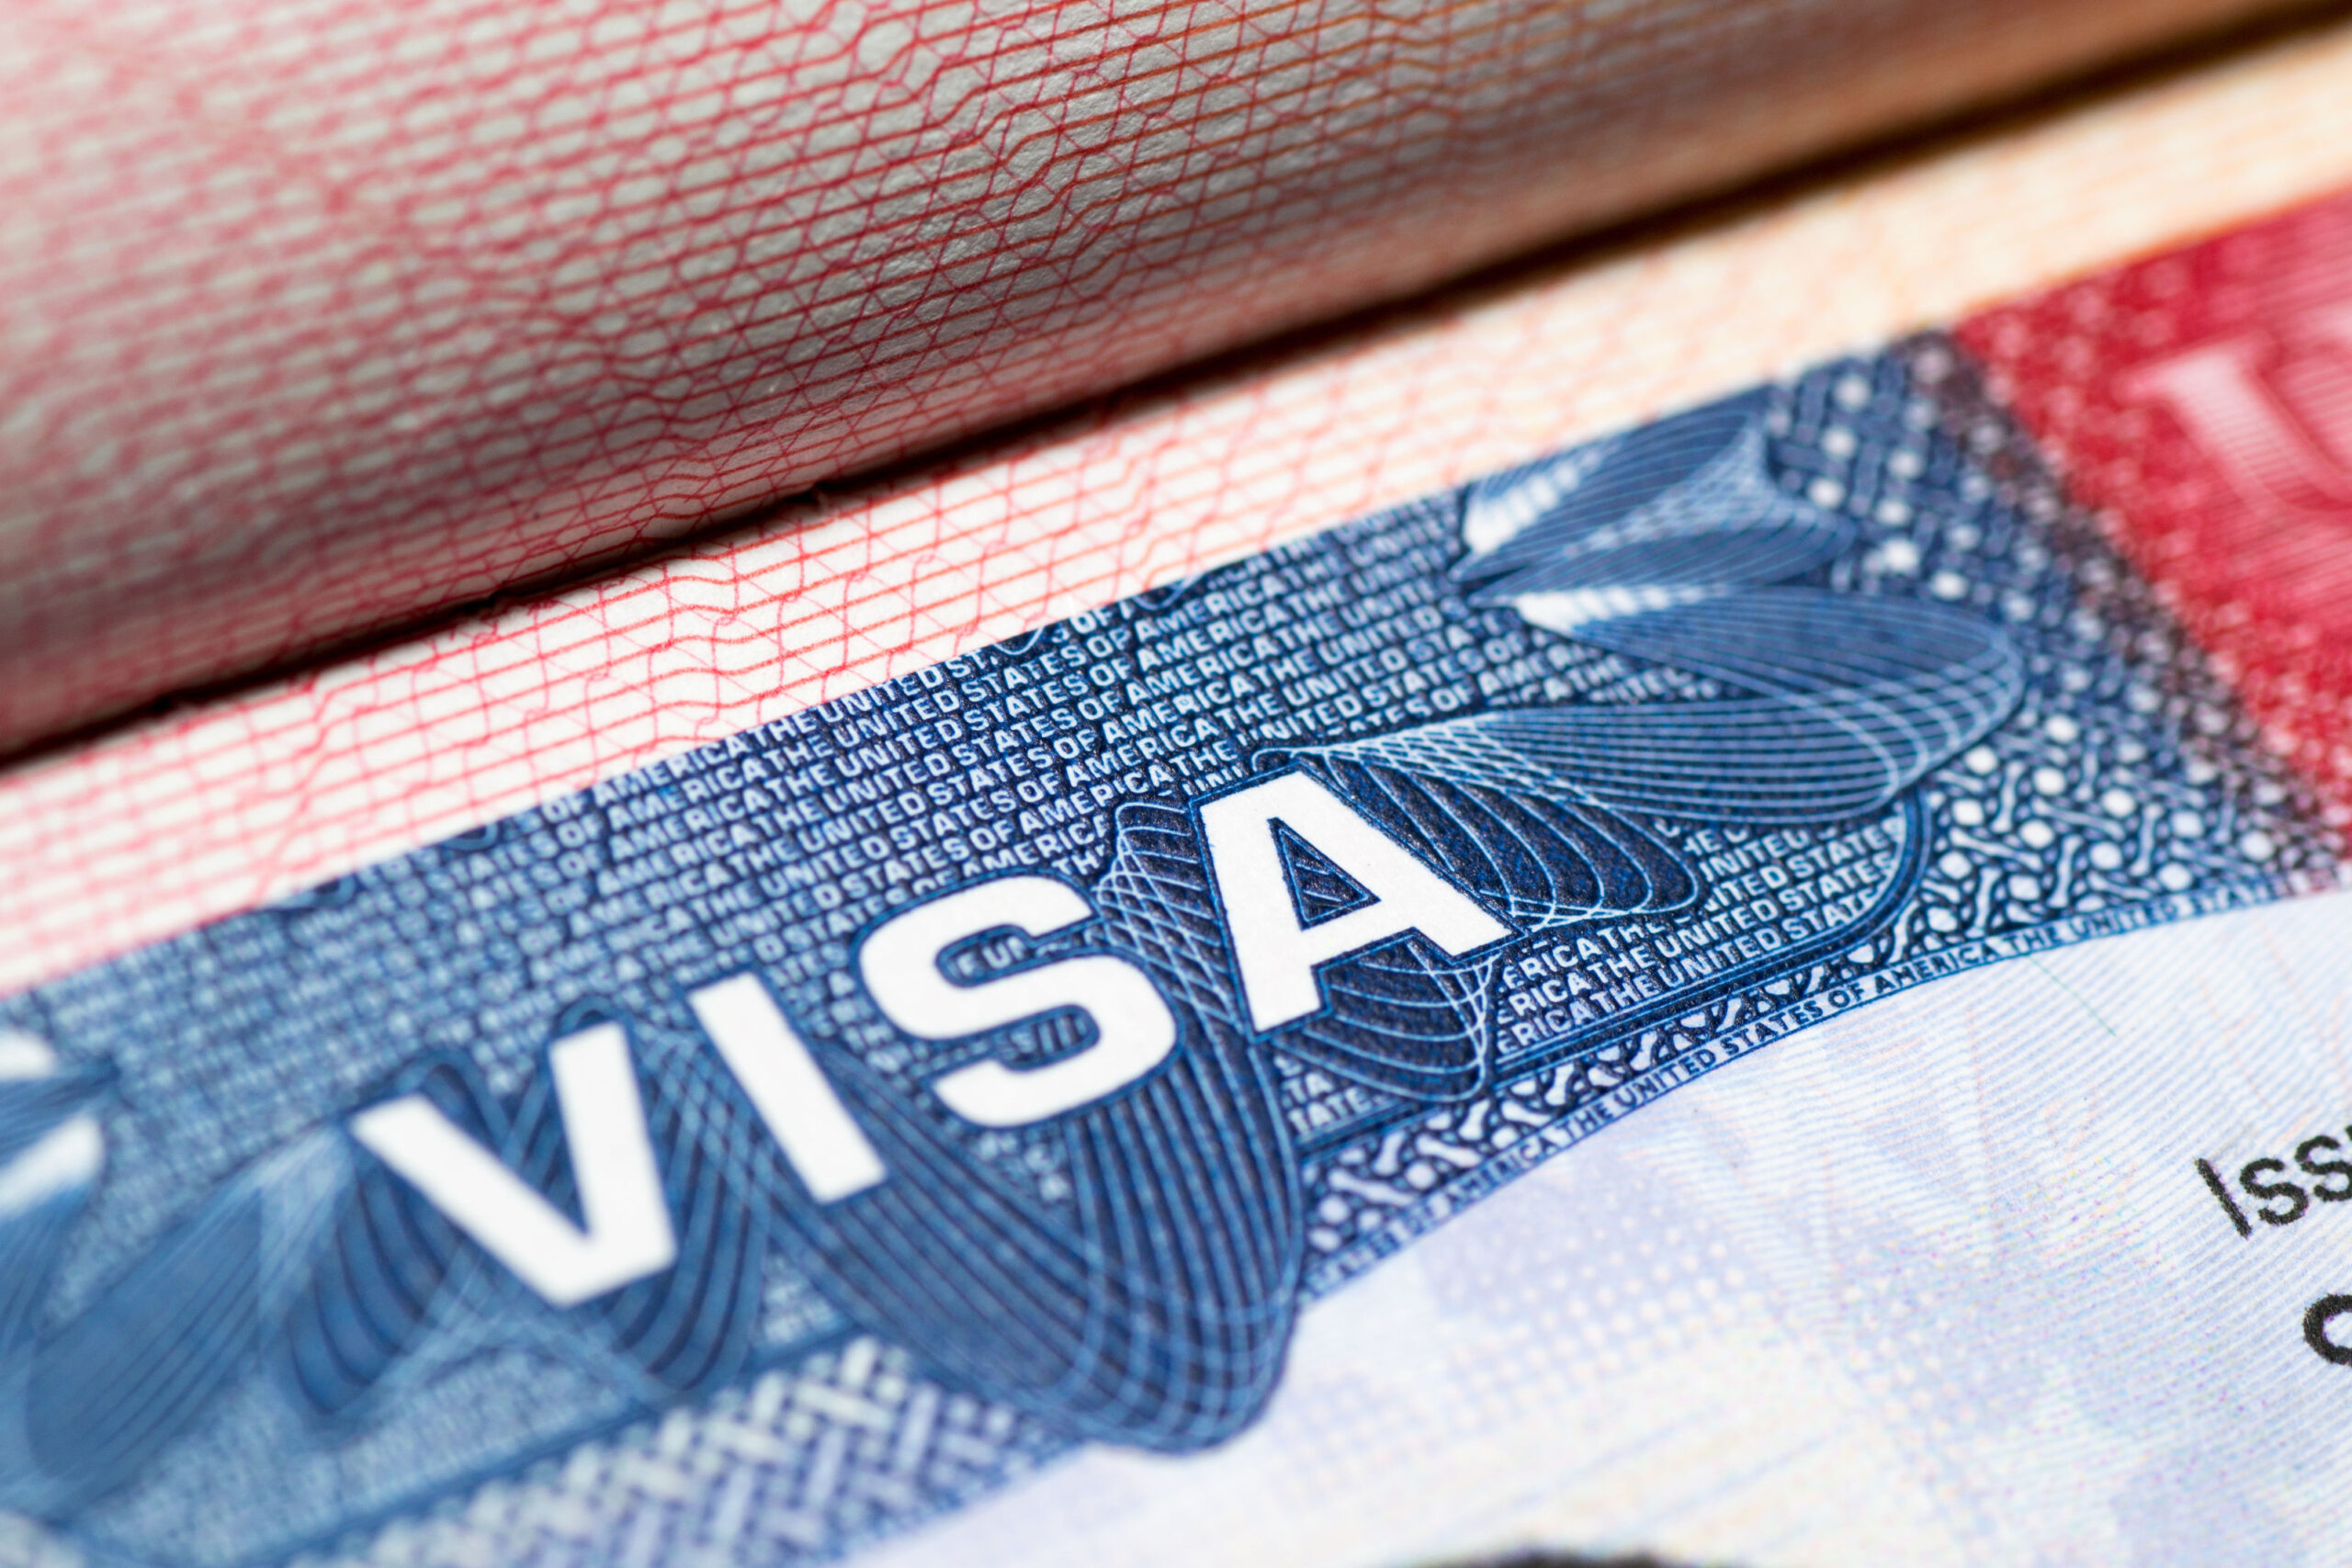 المغاربة من بين أكثر الجنسيات العربية حصولا على التأشيرة الأمريكية